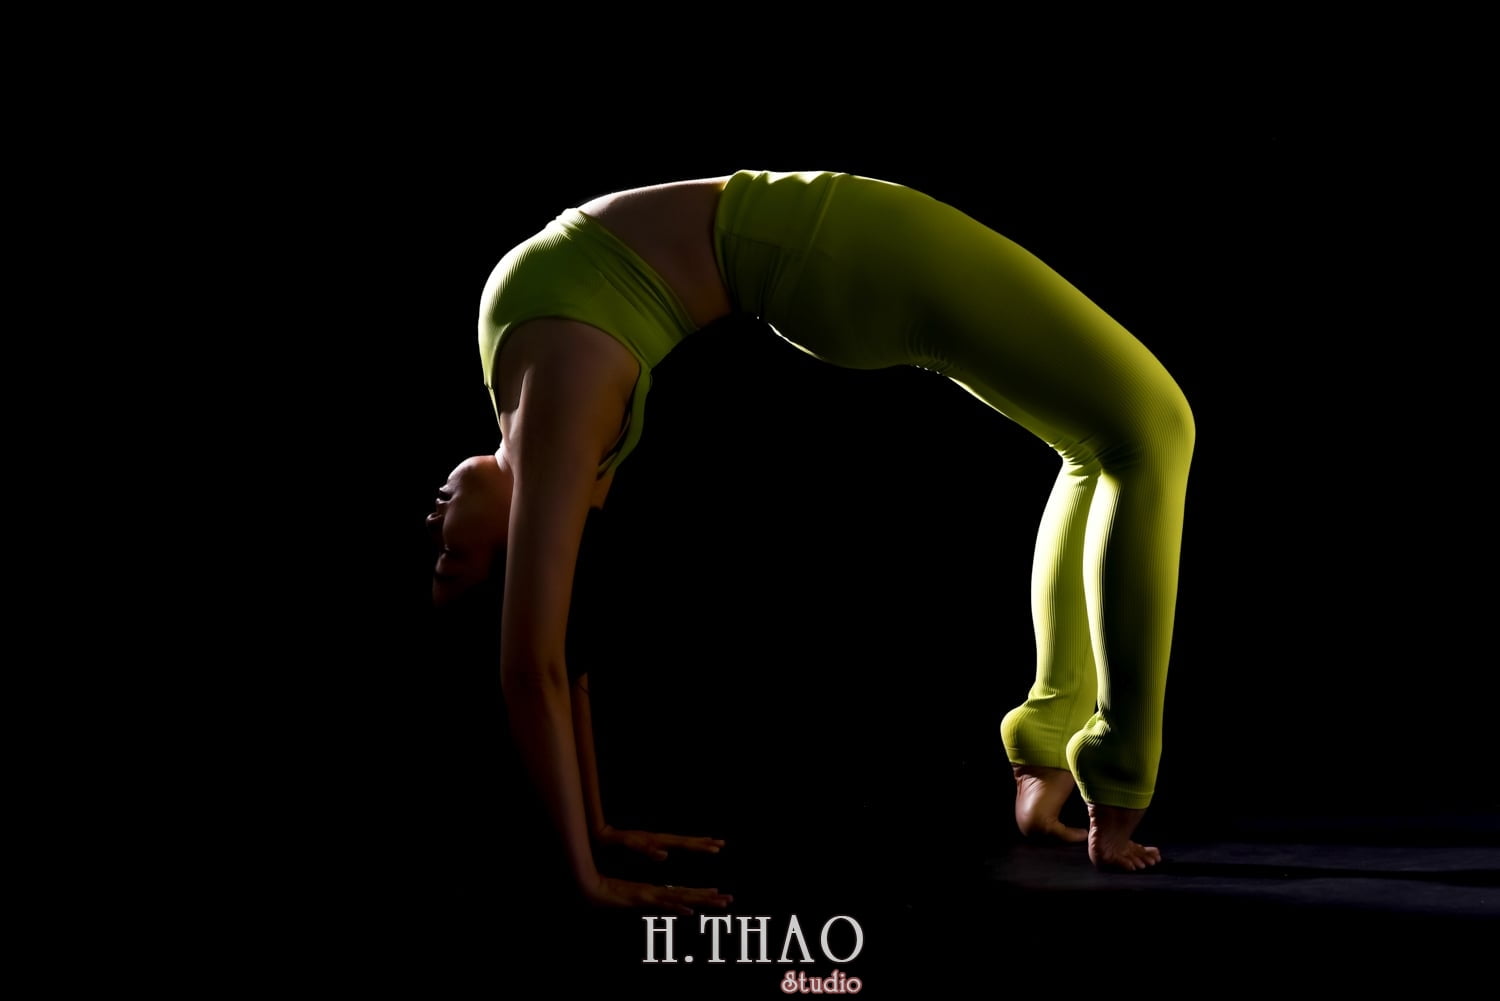 Anh yoga 23 min - Bộ ảnh Yoga chụp trong studio tuyệt đẹp – HThao Studio